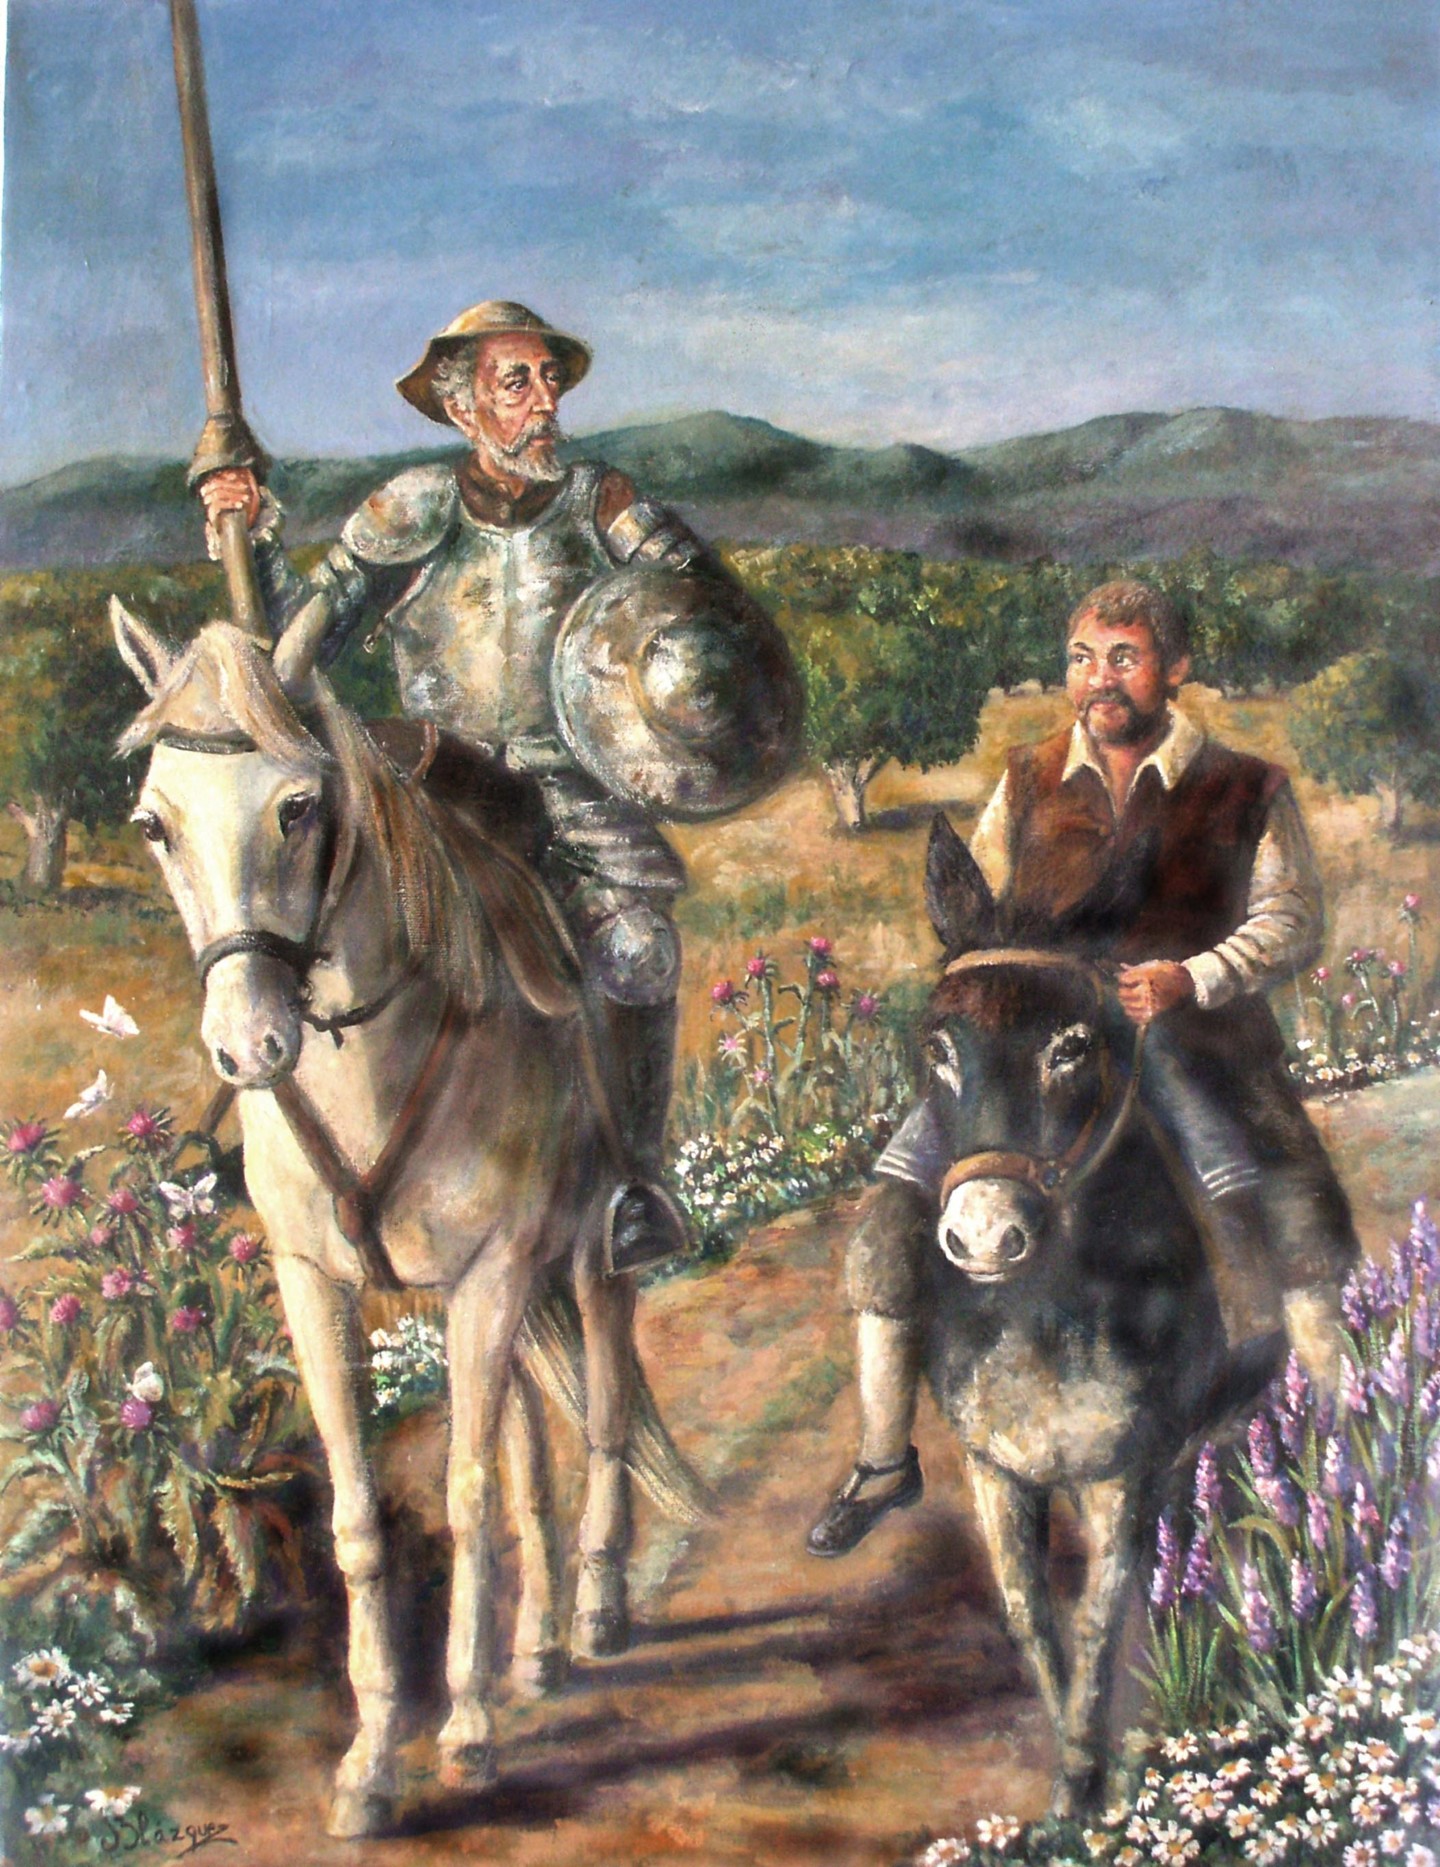 Don Quijote de la Mancha, una obra insigne de la literatura universal